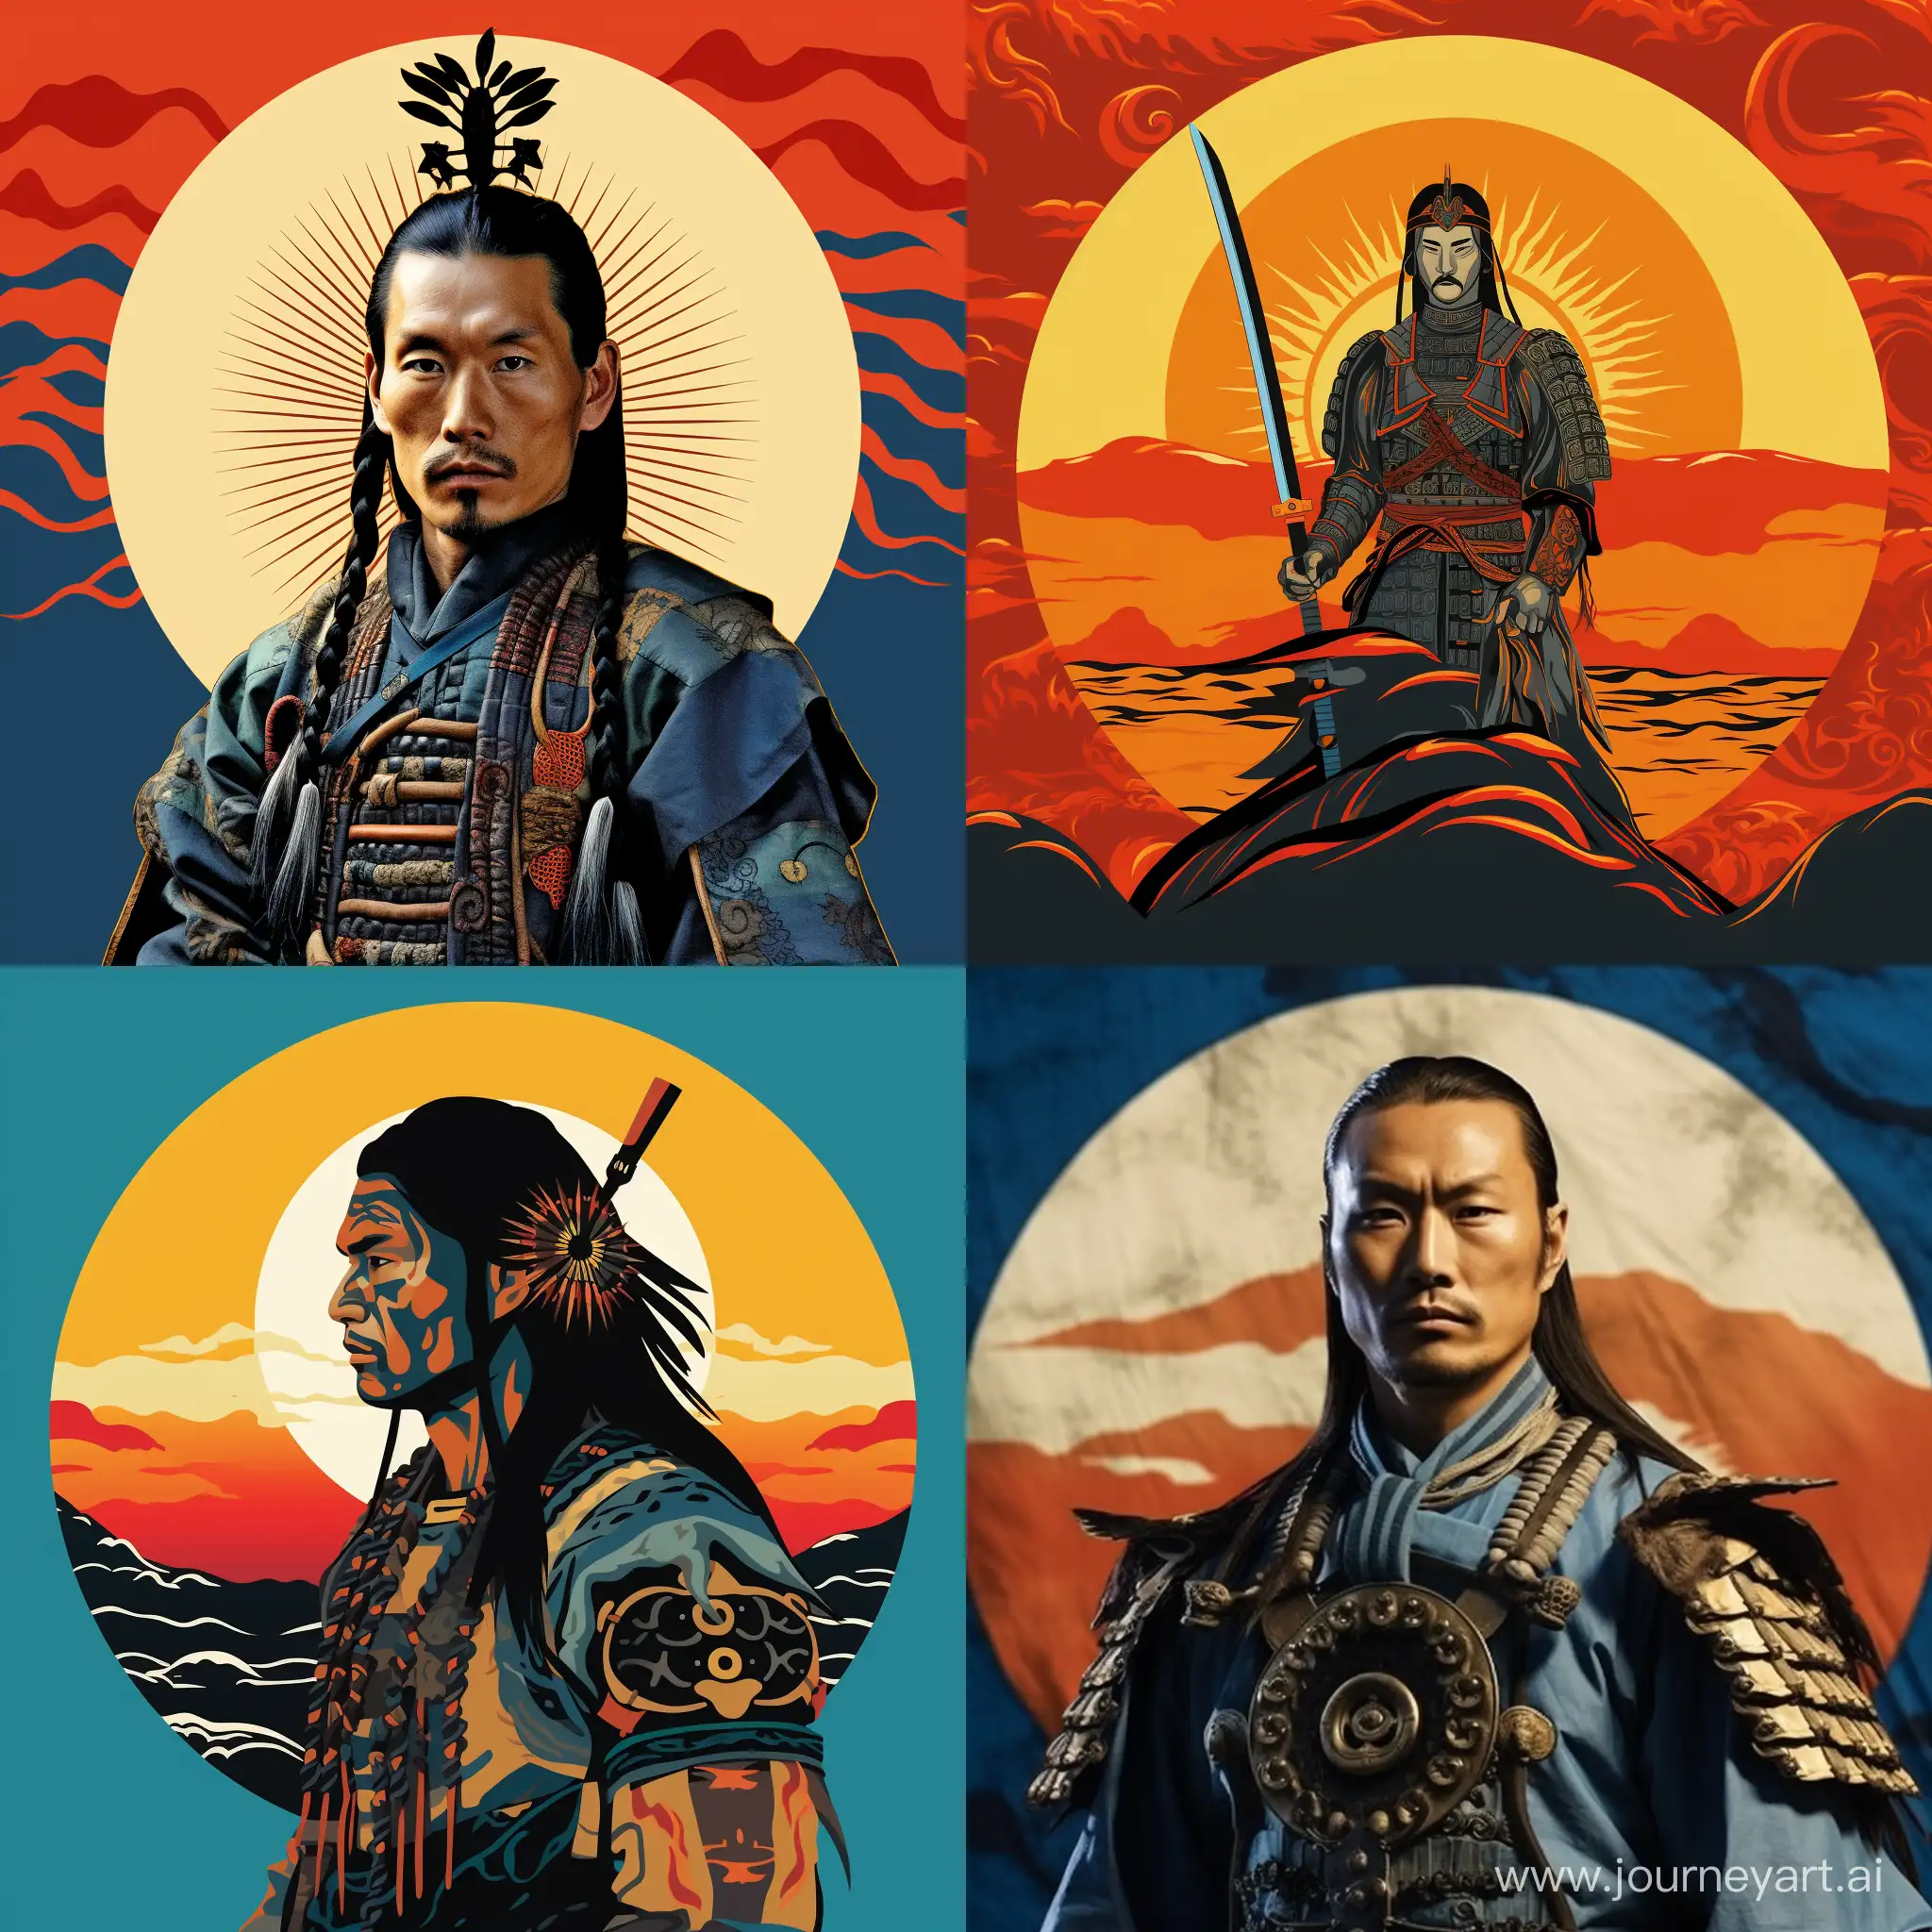 Kazakh-Samurai-Silhouette-Against-Flag-Sun